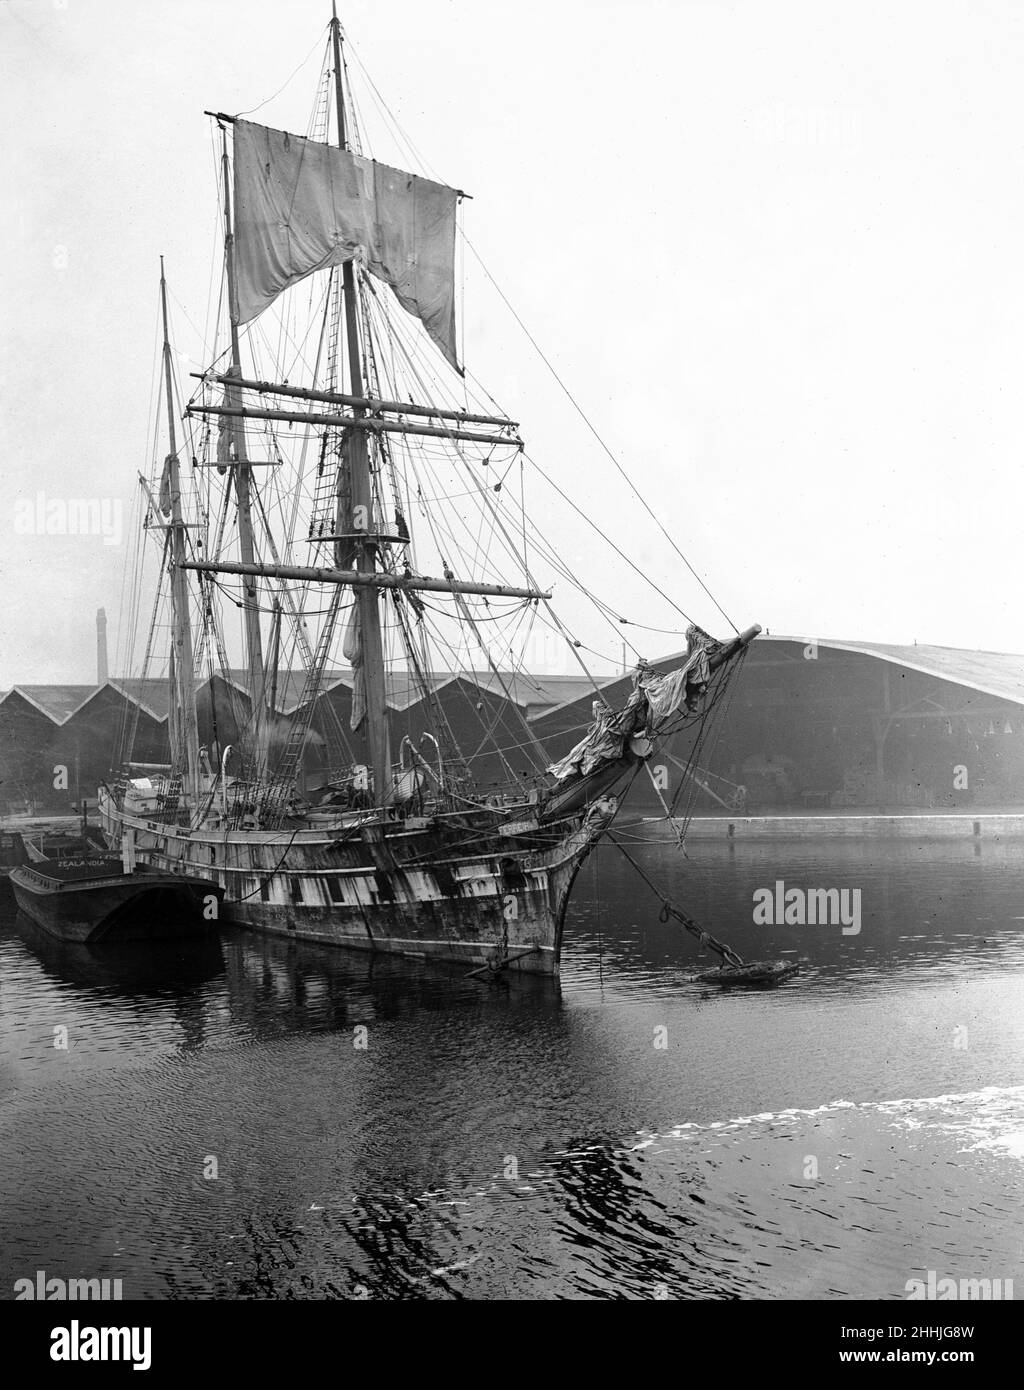 Le célèbre coupe-thé Cutty Sark, restauré dans le port de Falmouth.Circa 1925. Banque D'Images